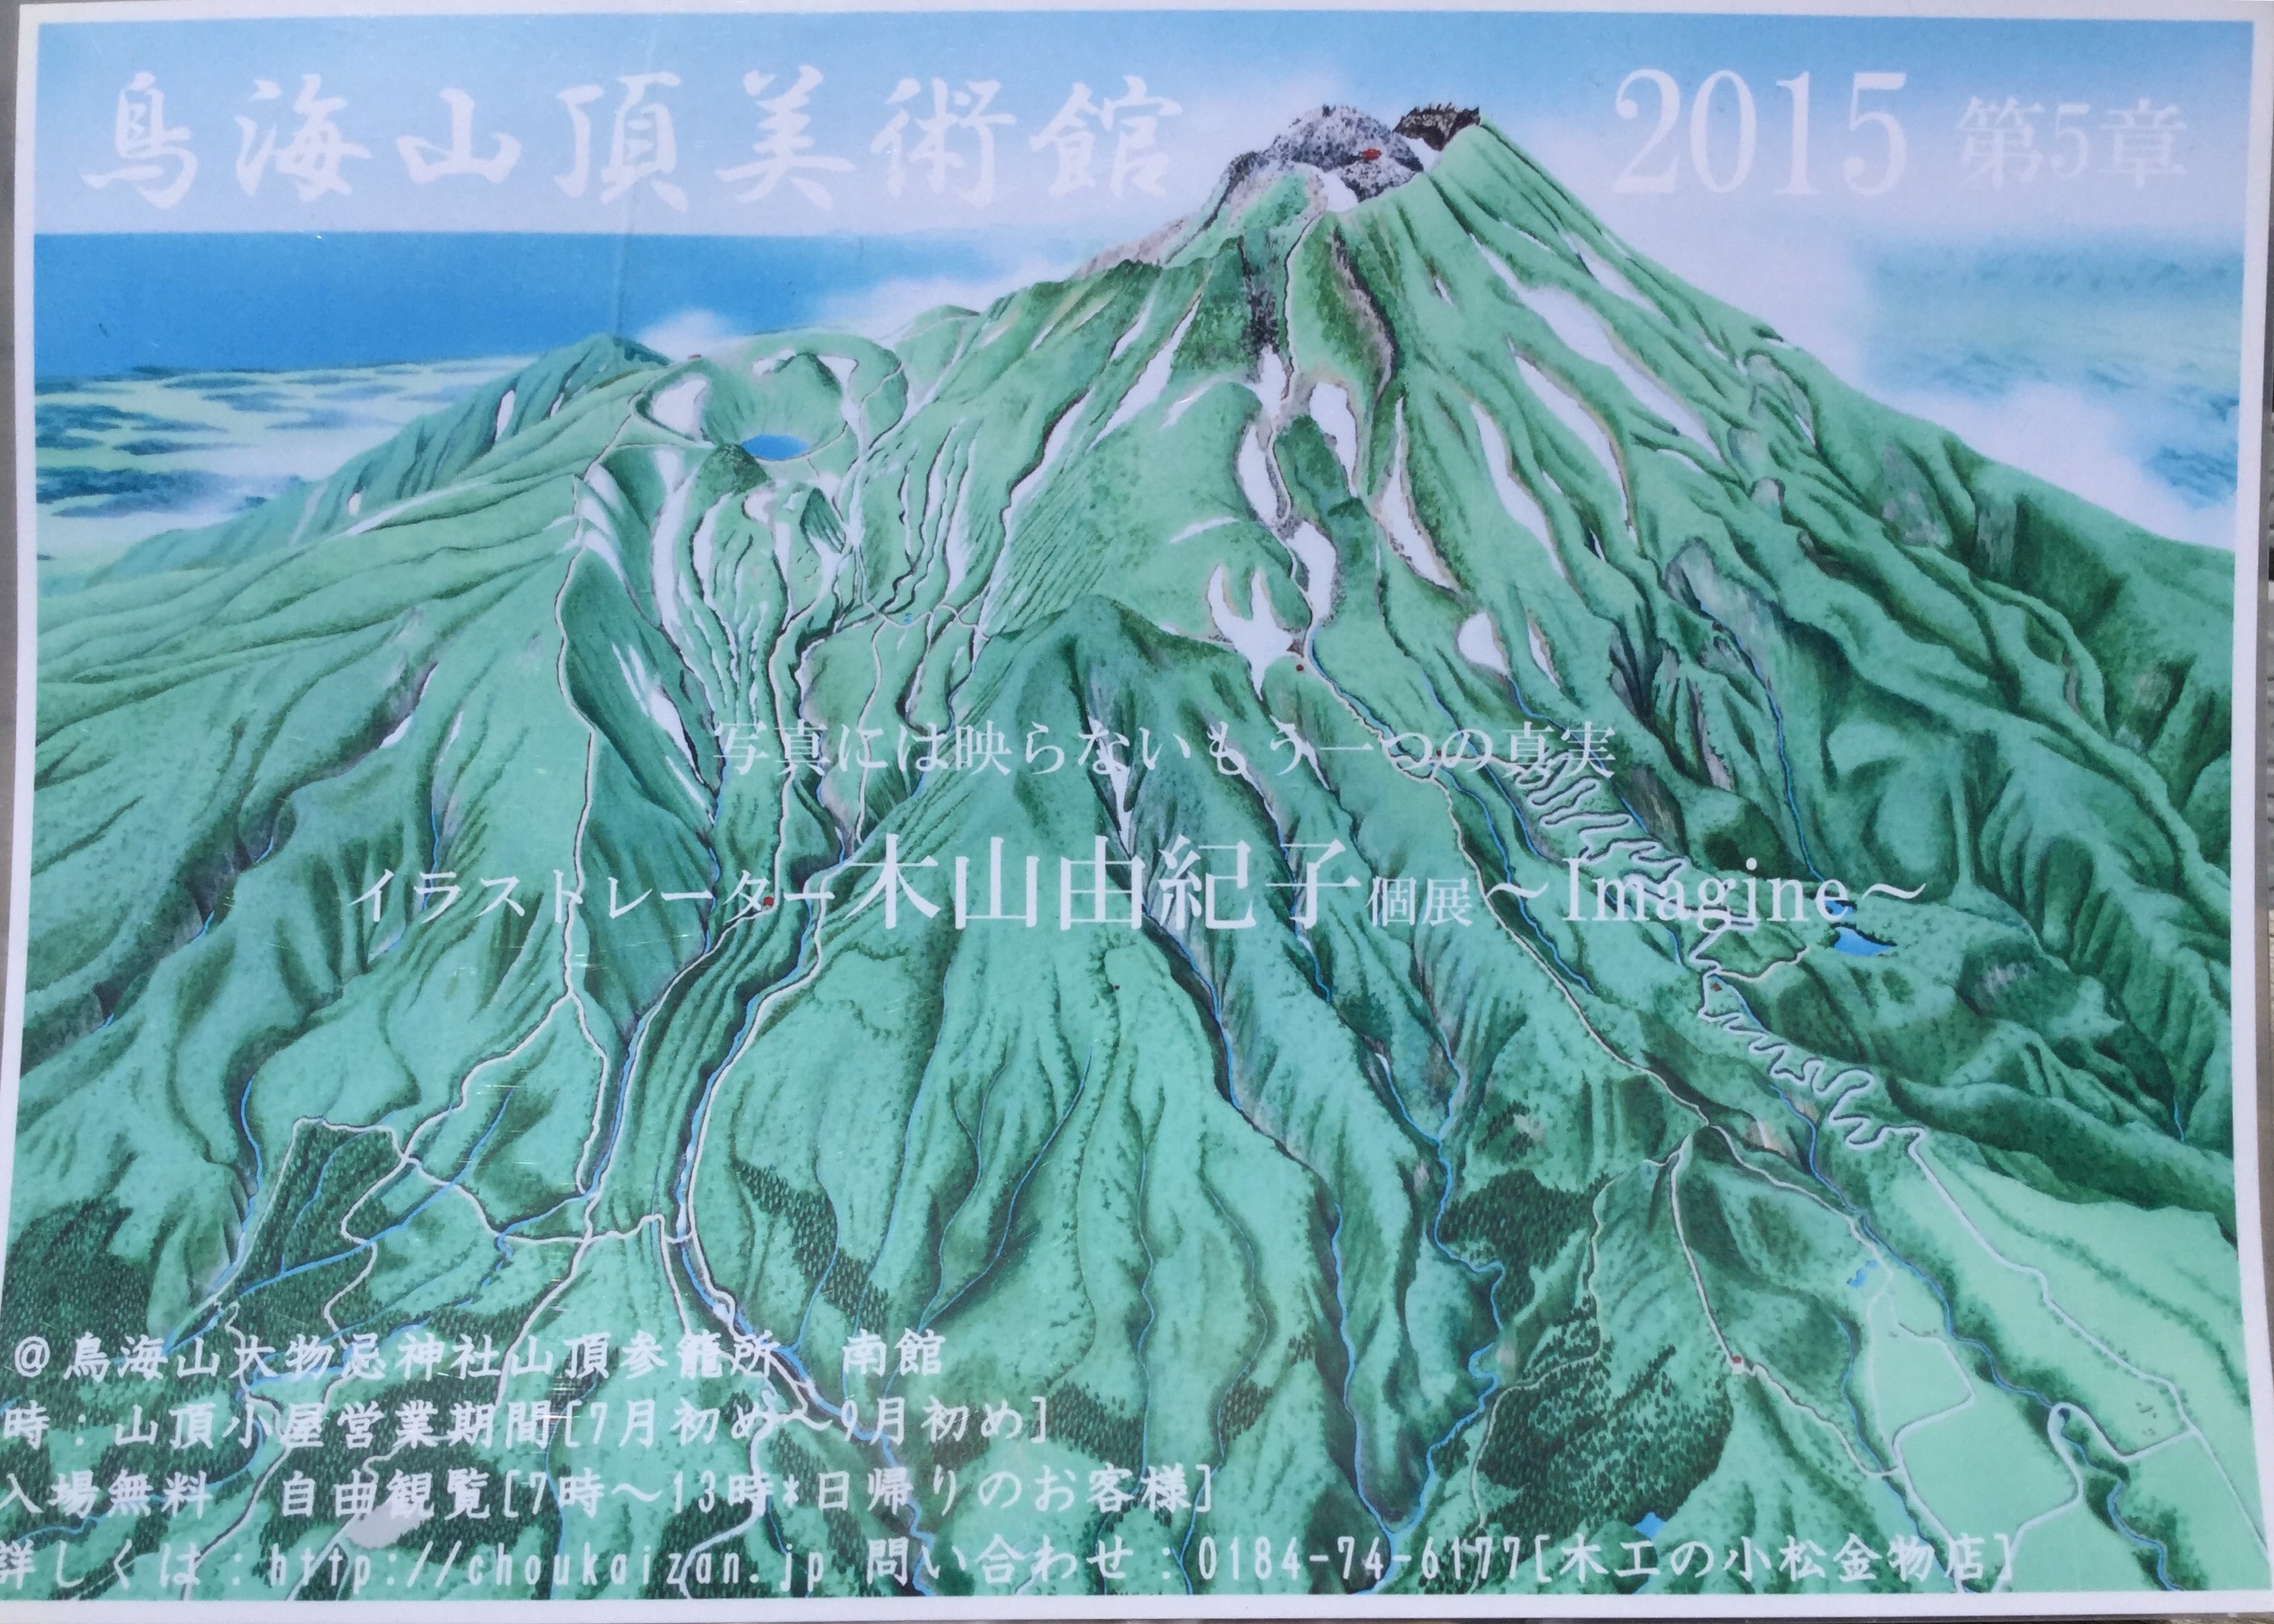 山頂美術館2015